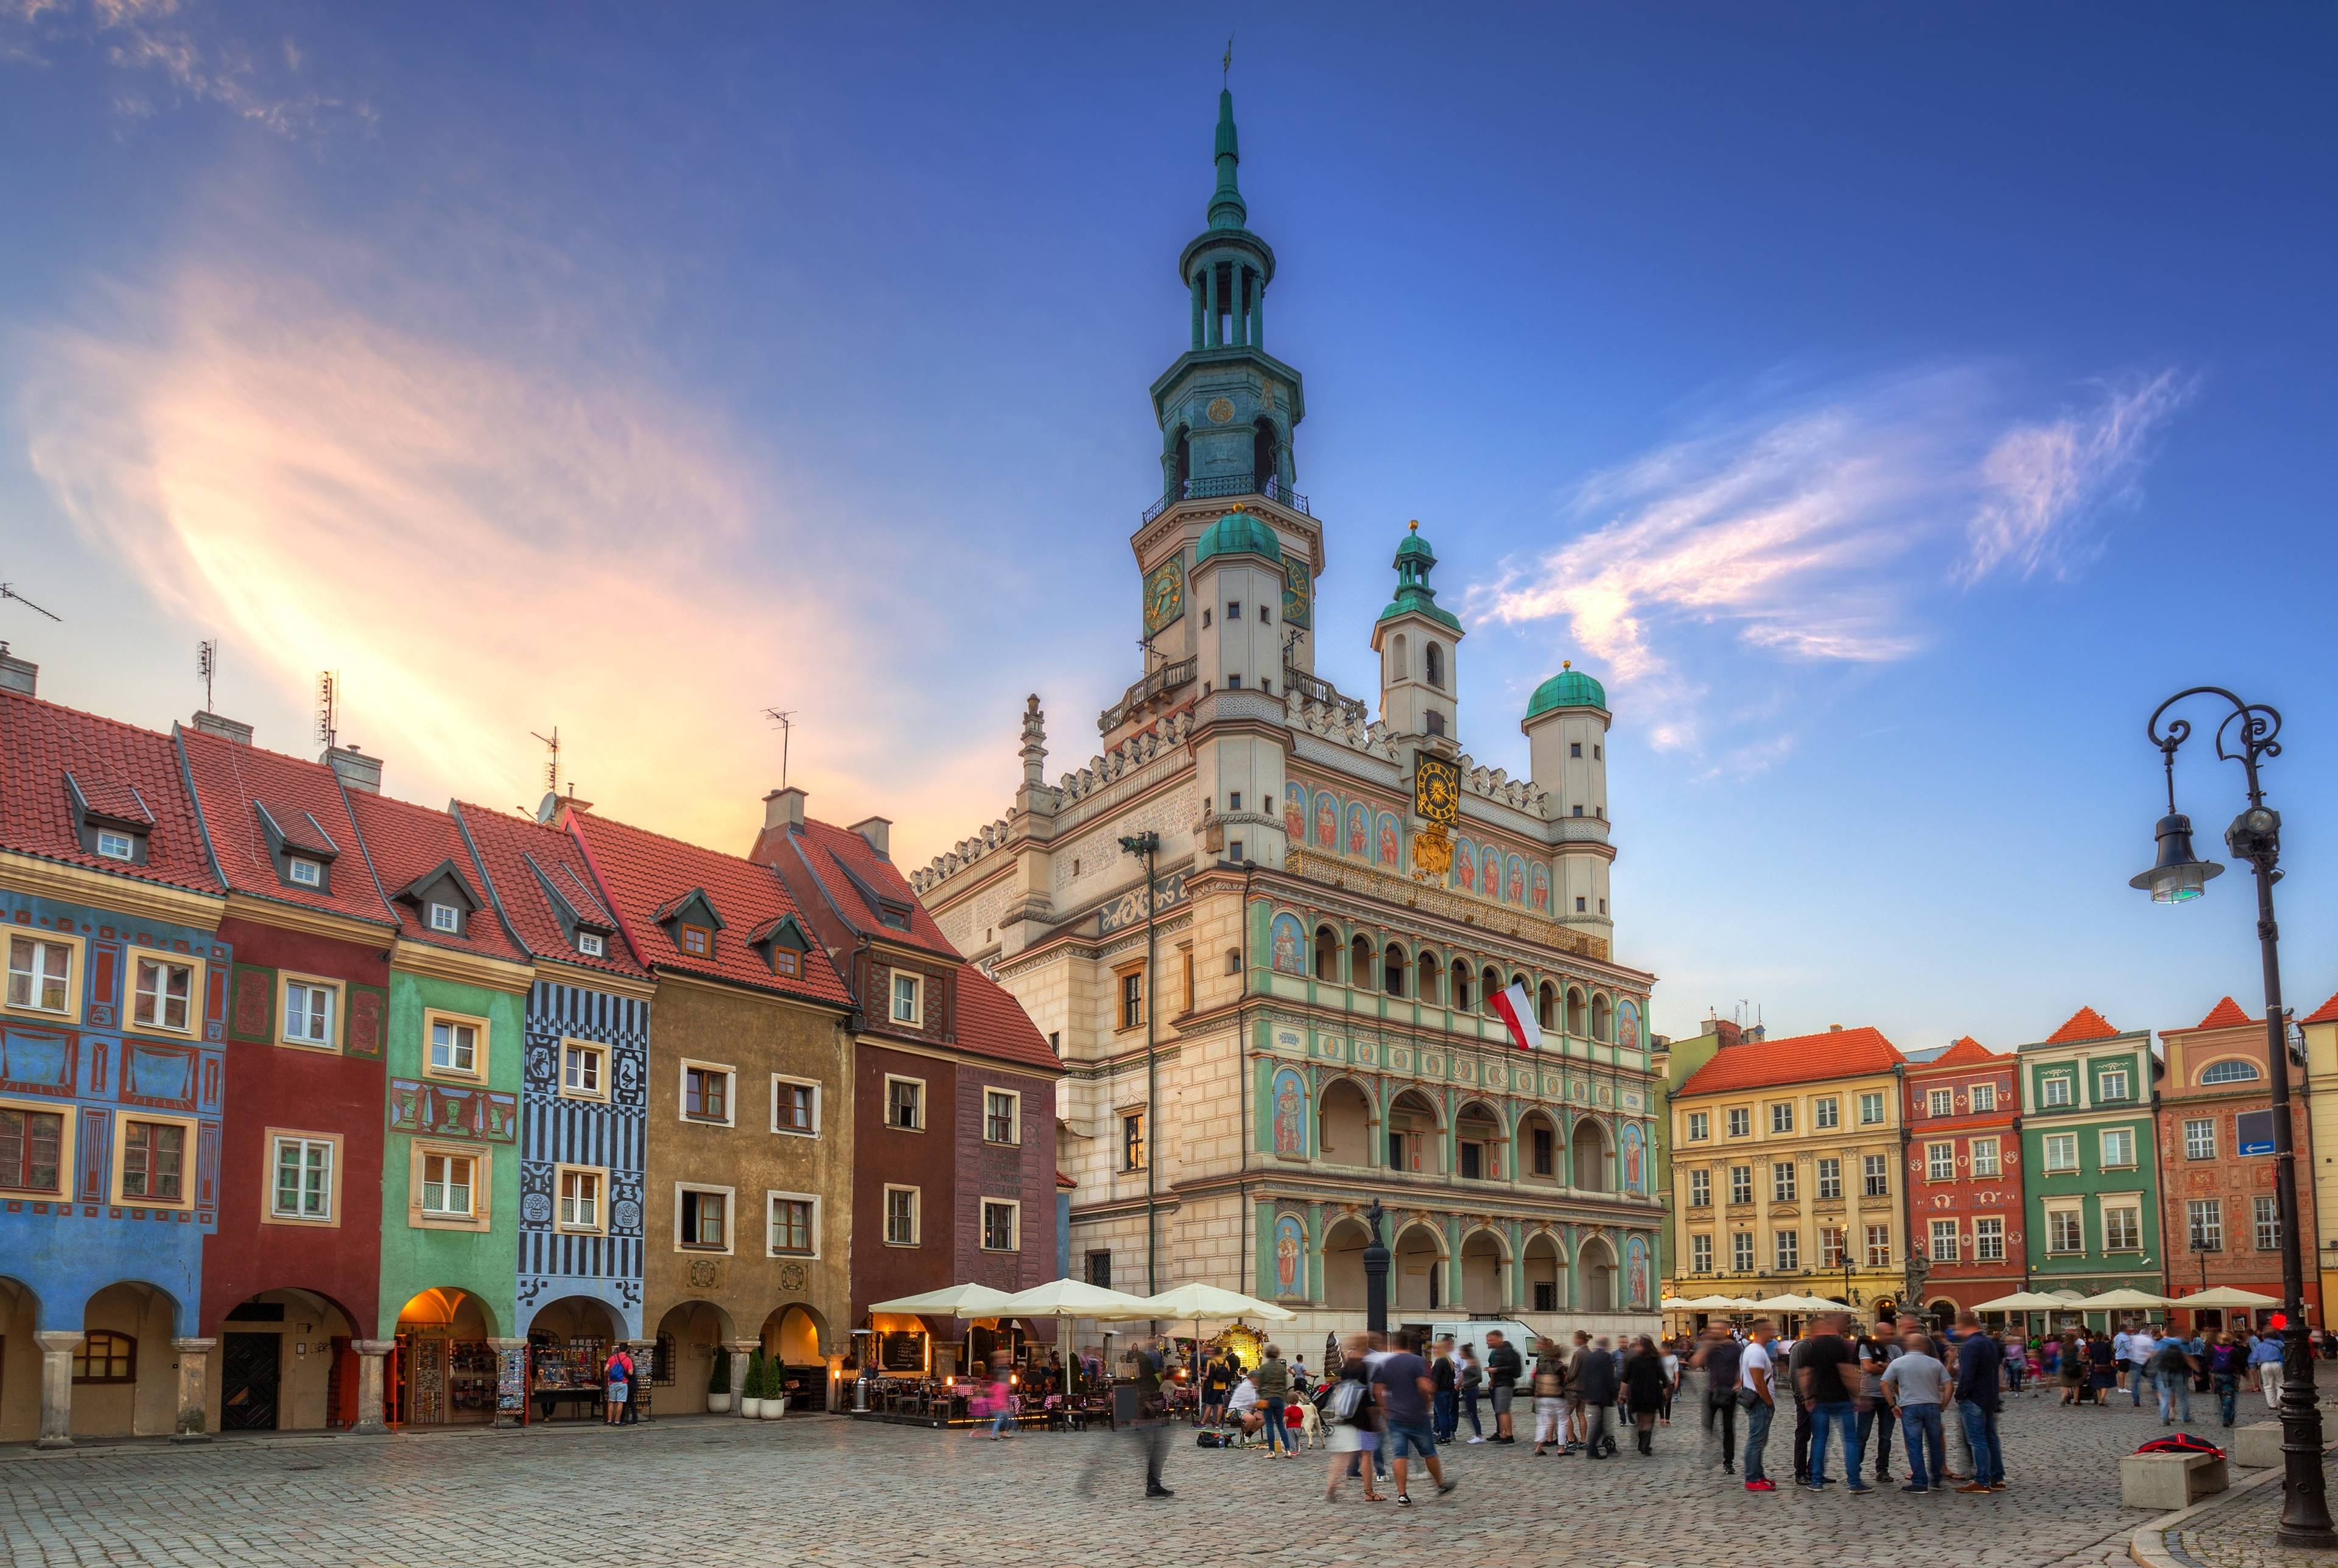 Torun und Poznan, zwei schöne polnische Städte